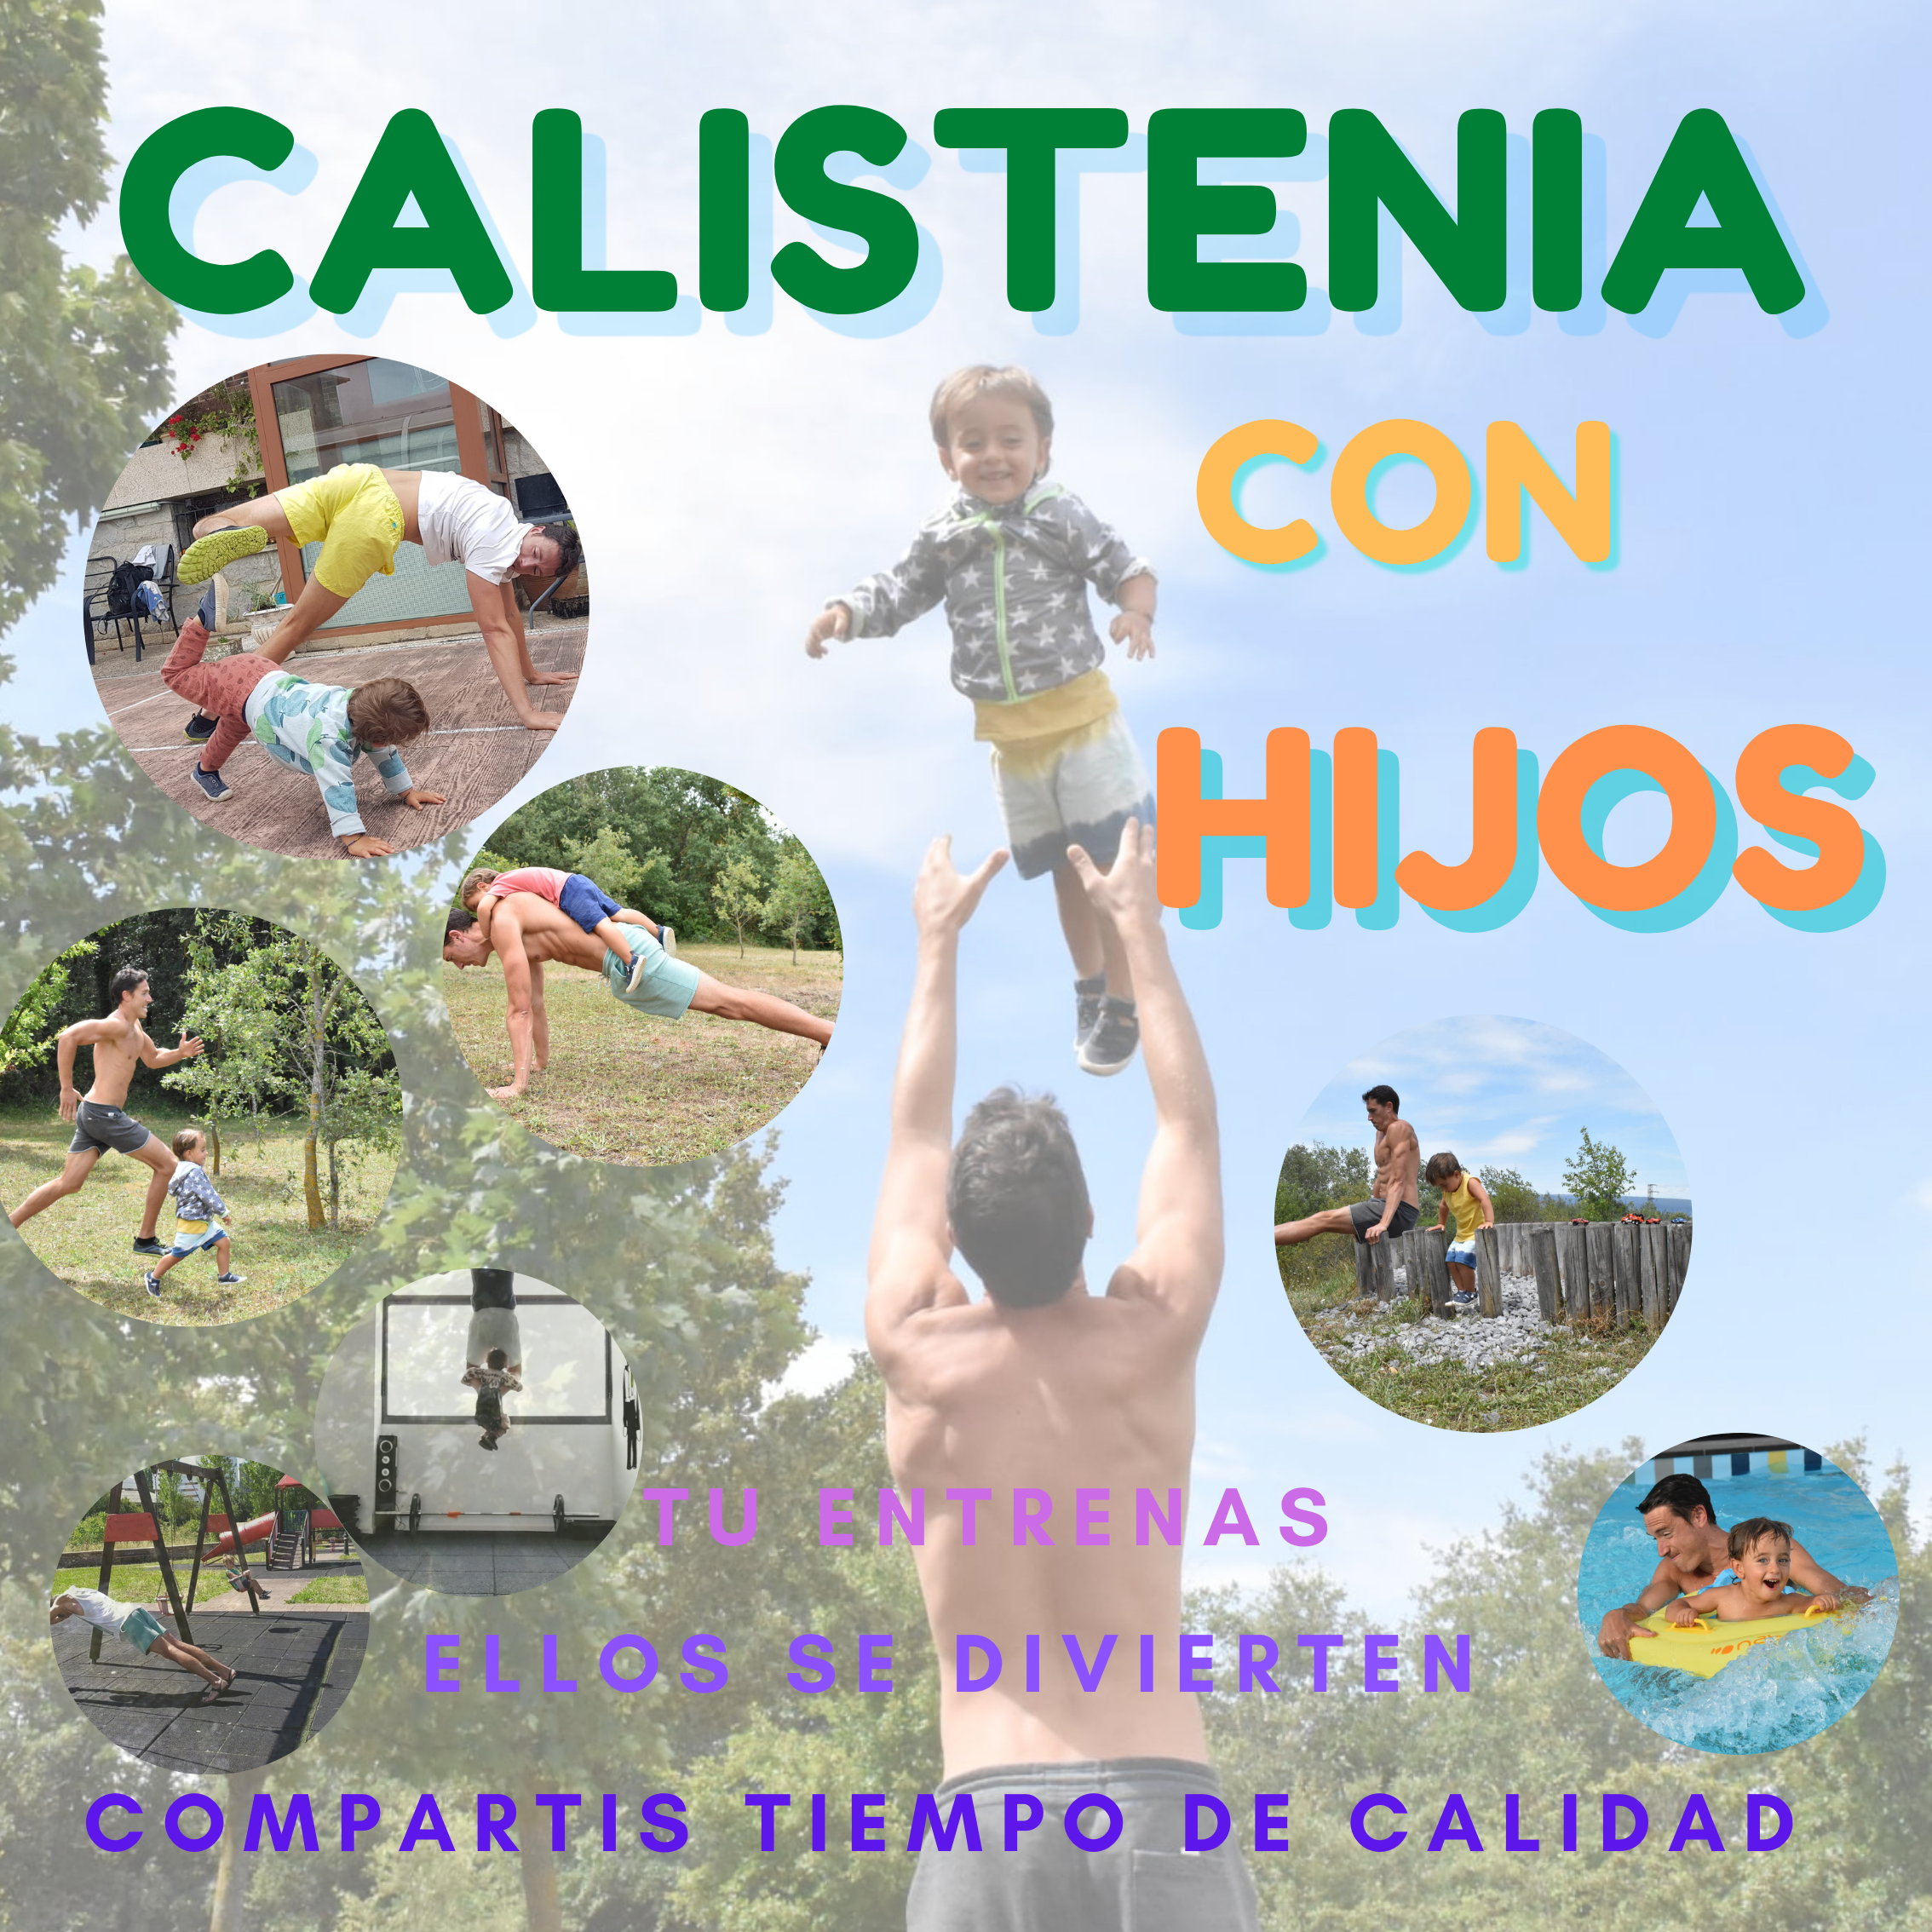 Calistenia con hijos